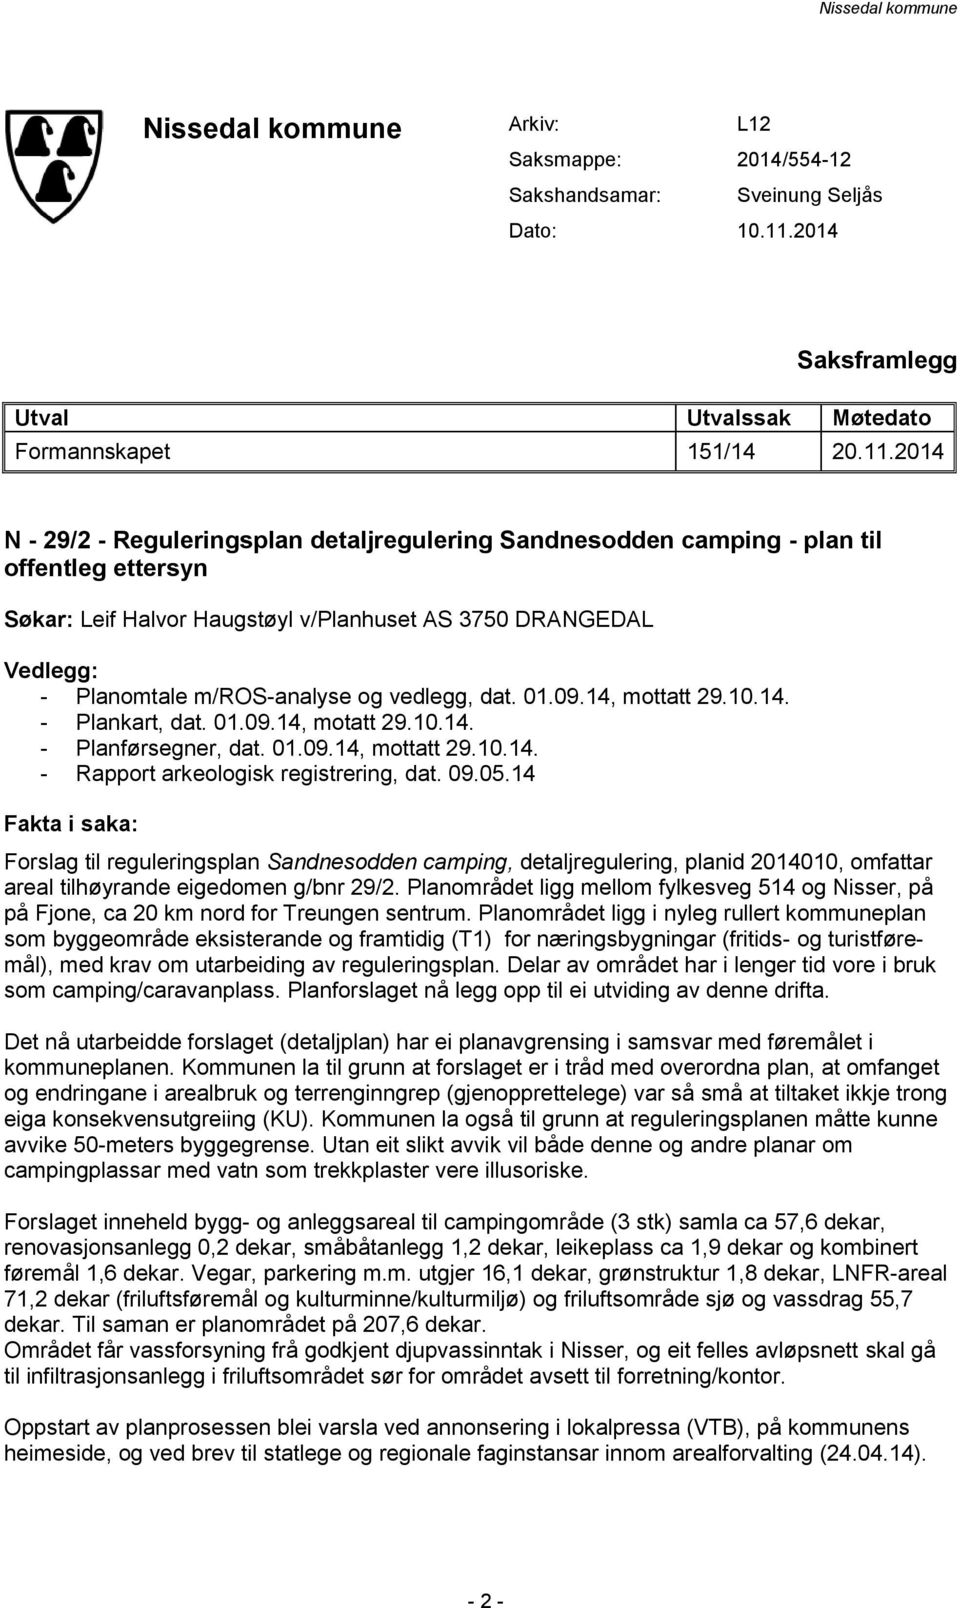 2014 N - 29/2 - Reguleringsplan detaljregulering Sandnesodden camping - plan til offentleg ettersyn Søkar: Leif Halvor Haugstøyl v/planhuset AS 3750 DRANGEDAL Vedlegg: - Planomtale m/ros-analyse og